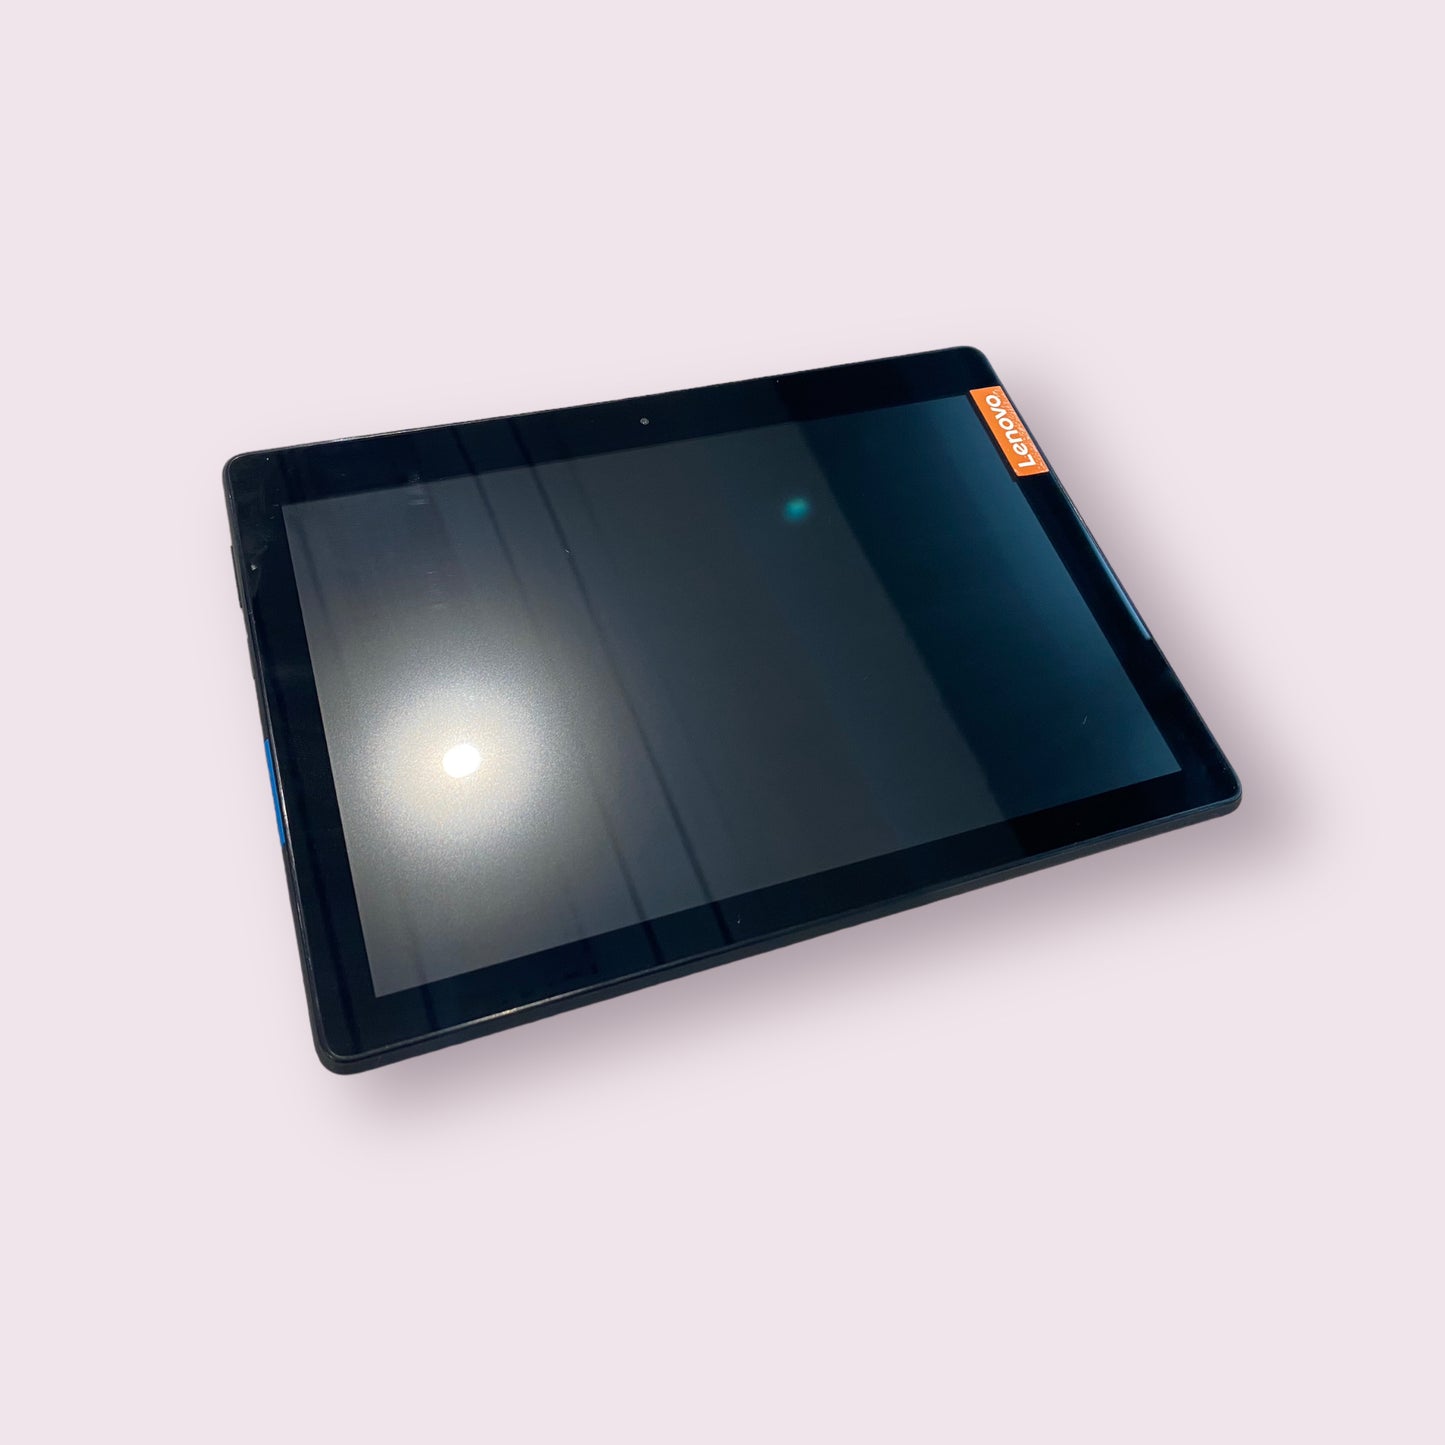 Lenovo Tab E10 10.1" TB-X104F 16GB Android Tablet Black - WIFI - Grade B